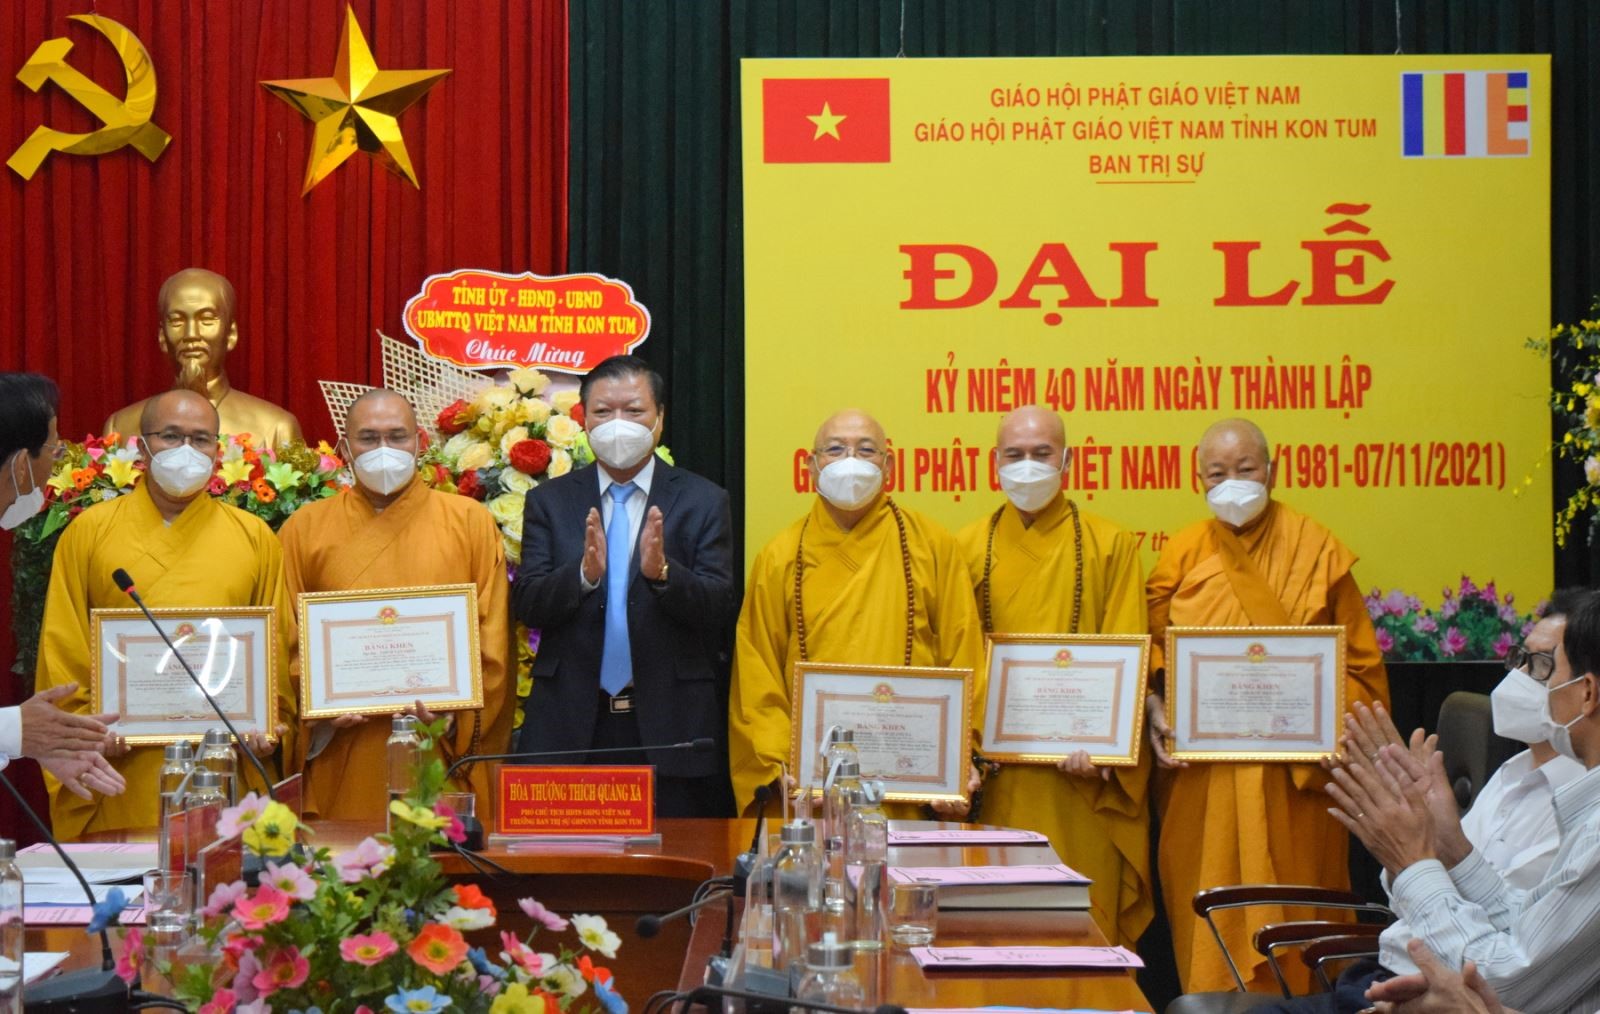 Đại lễ kỉ niệm 40 năm ngày thành lập Giáo hội Phật giáo Việt Nam